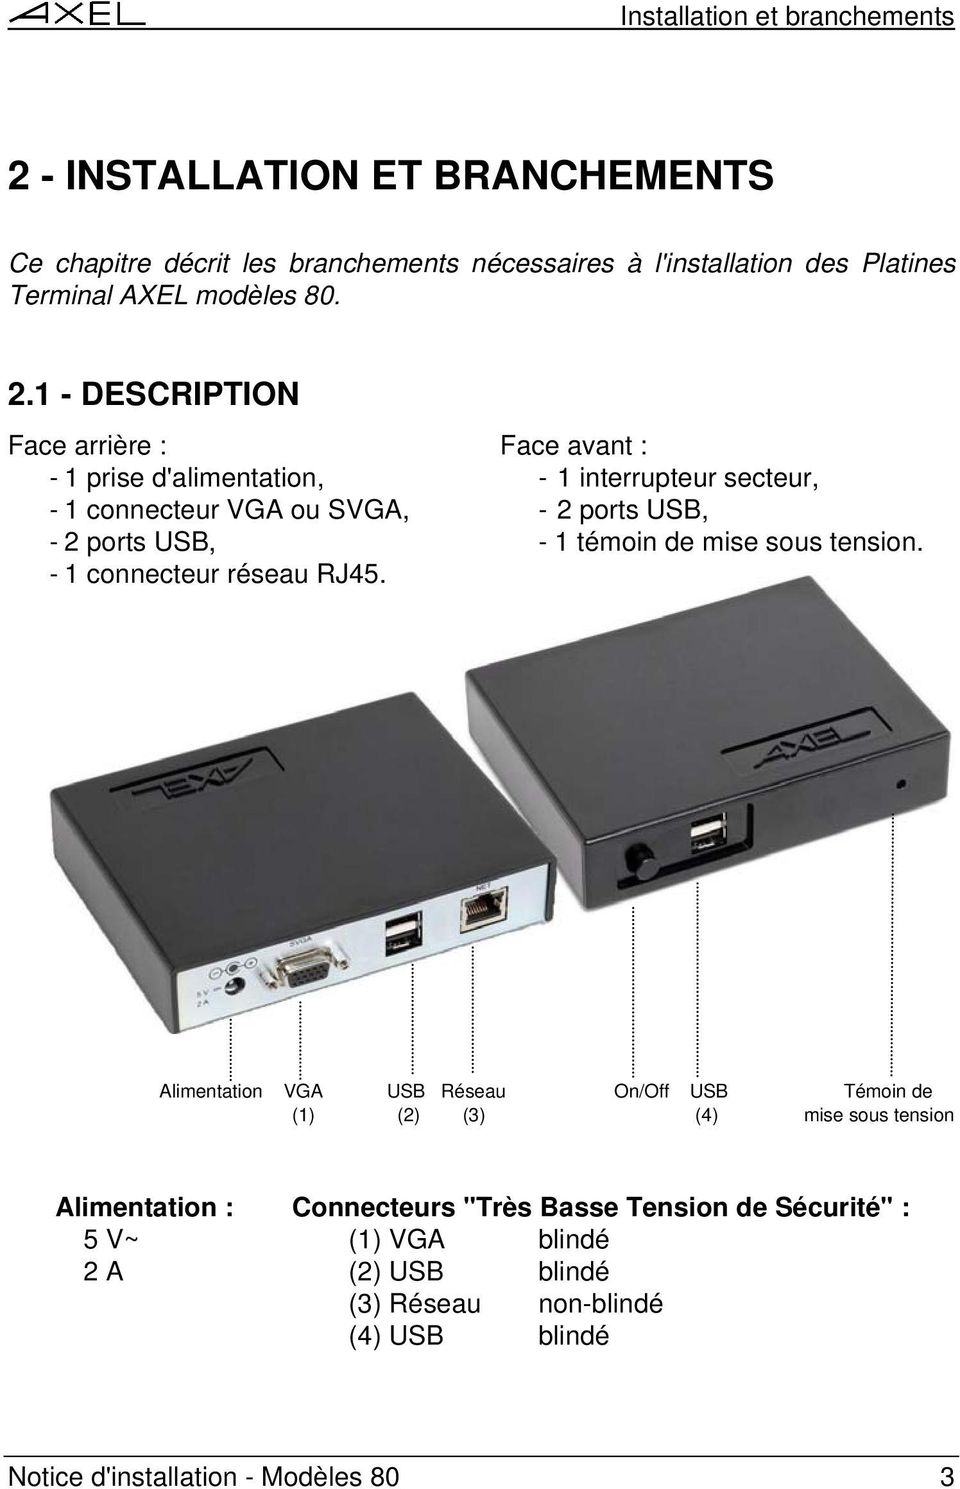 1 - DESCRIPTION Face arrière : Face avant : - 1 prise d'alimentation, - 1 interrupteur secteur, - 1 connecteur VGA ou SVGA, - 2 ports USB, - 2 ports USB, - 1